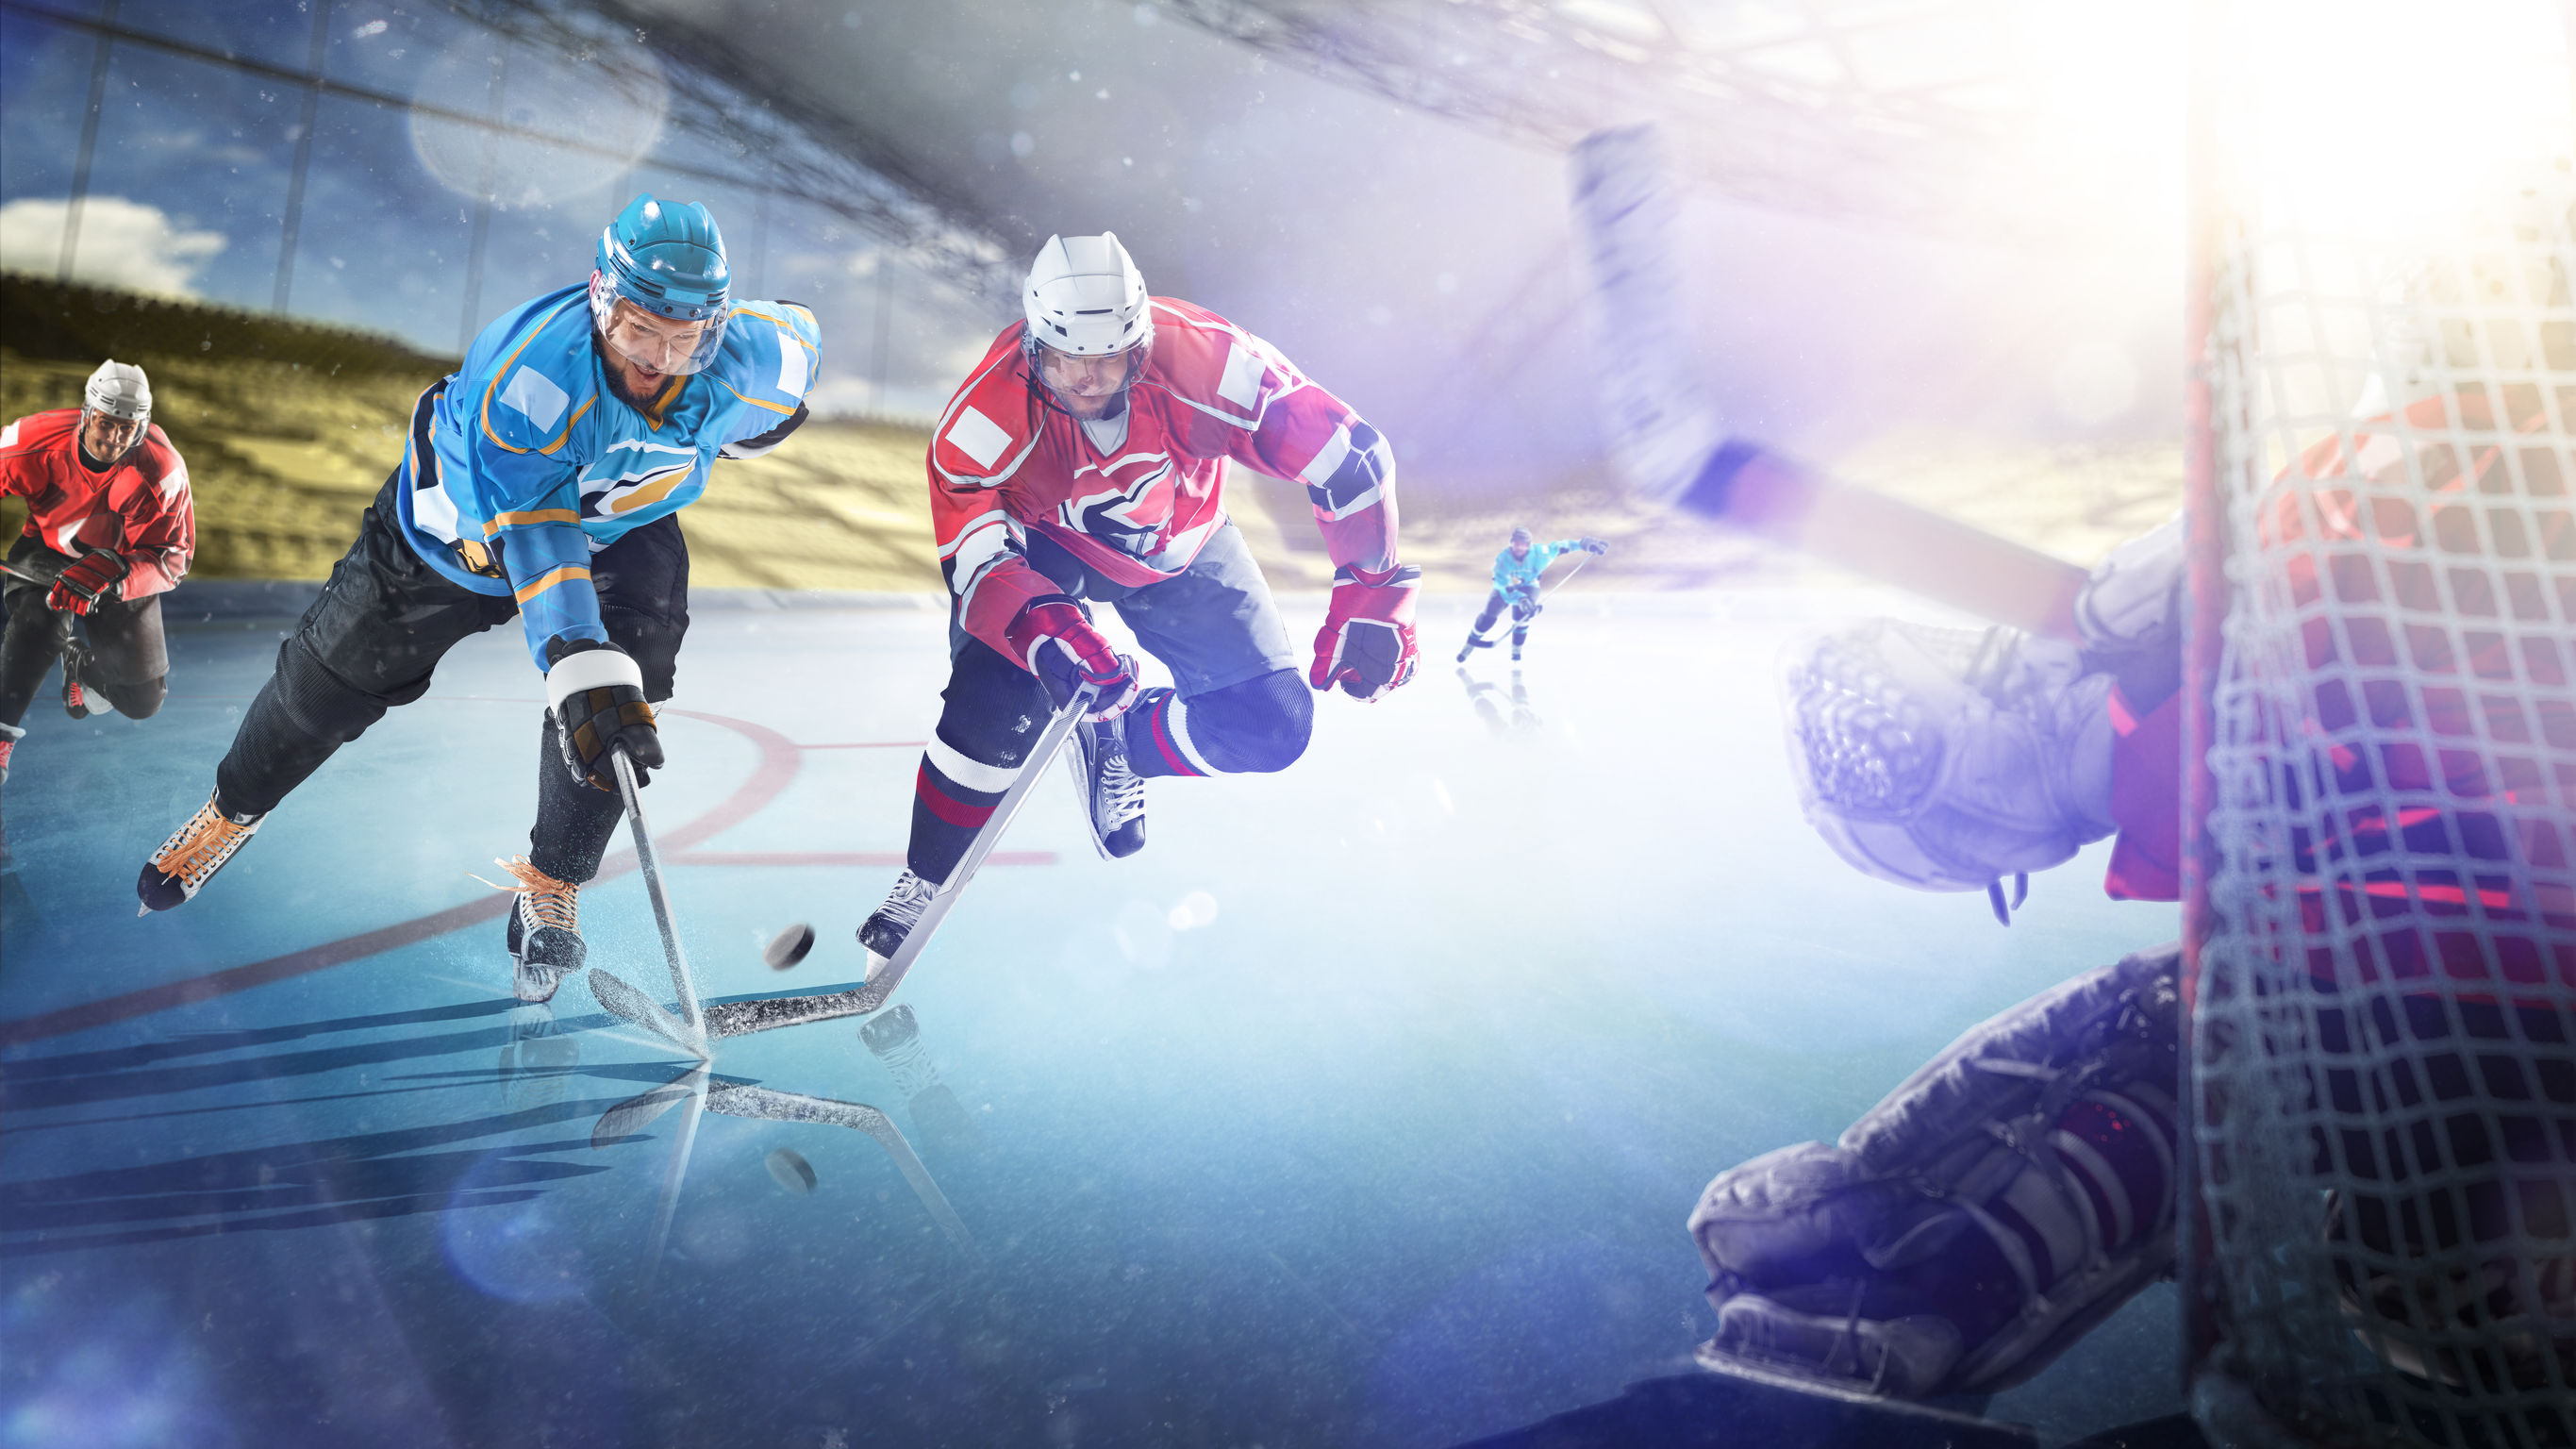 Massimo Lorenzi : « René Fasel a été contraint d’annuler les championnats du monde de hockey sur glace »